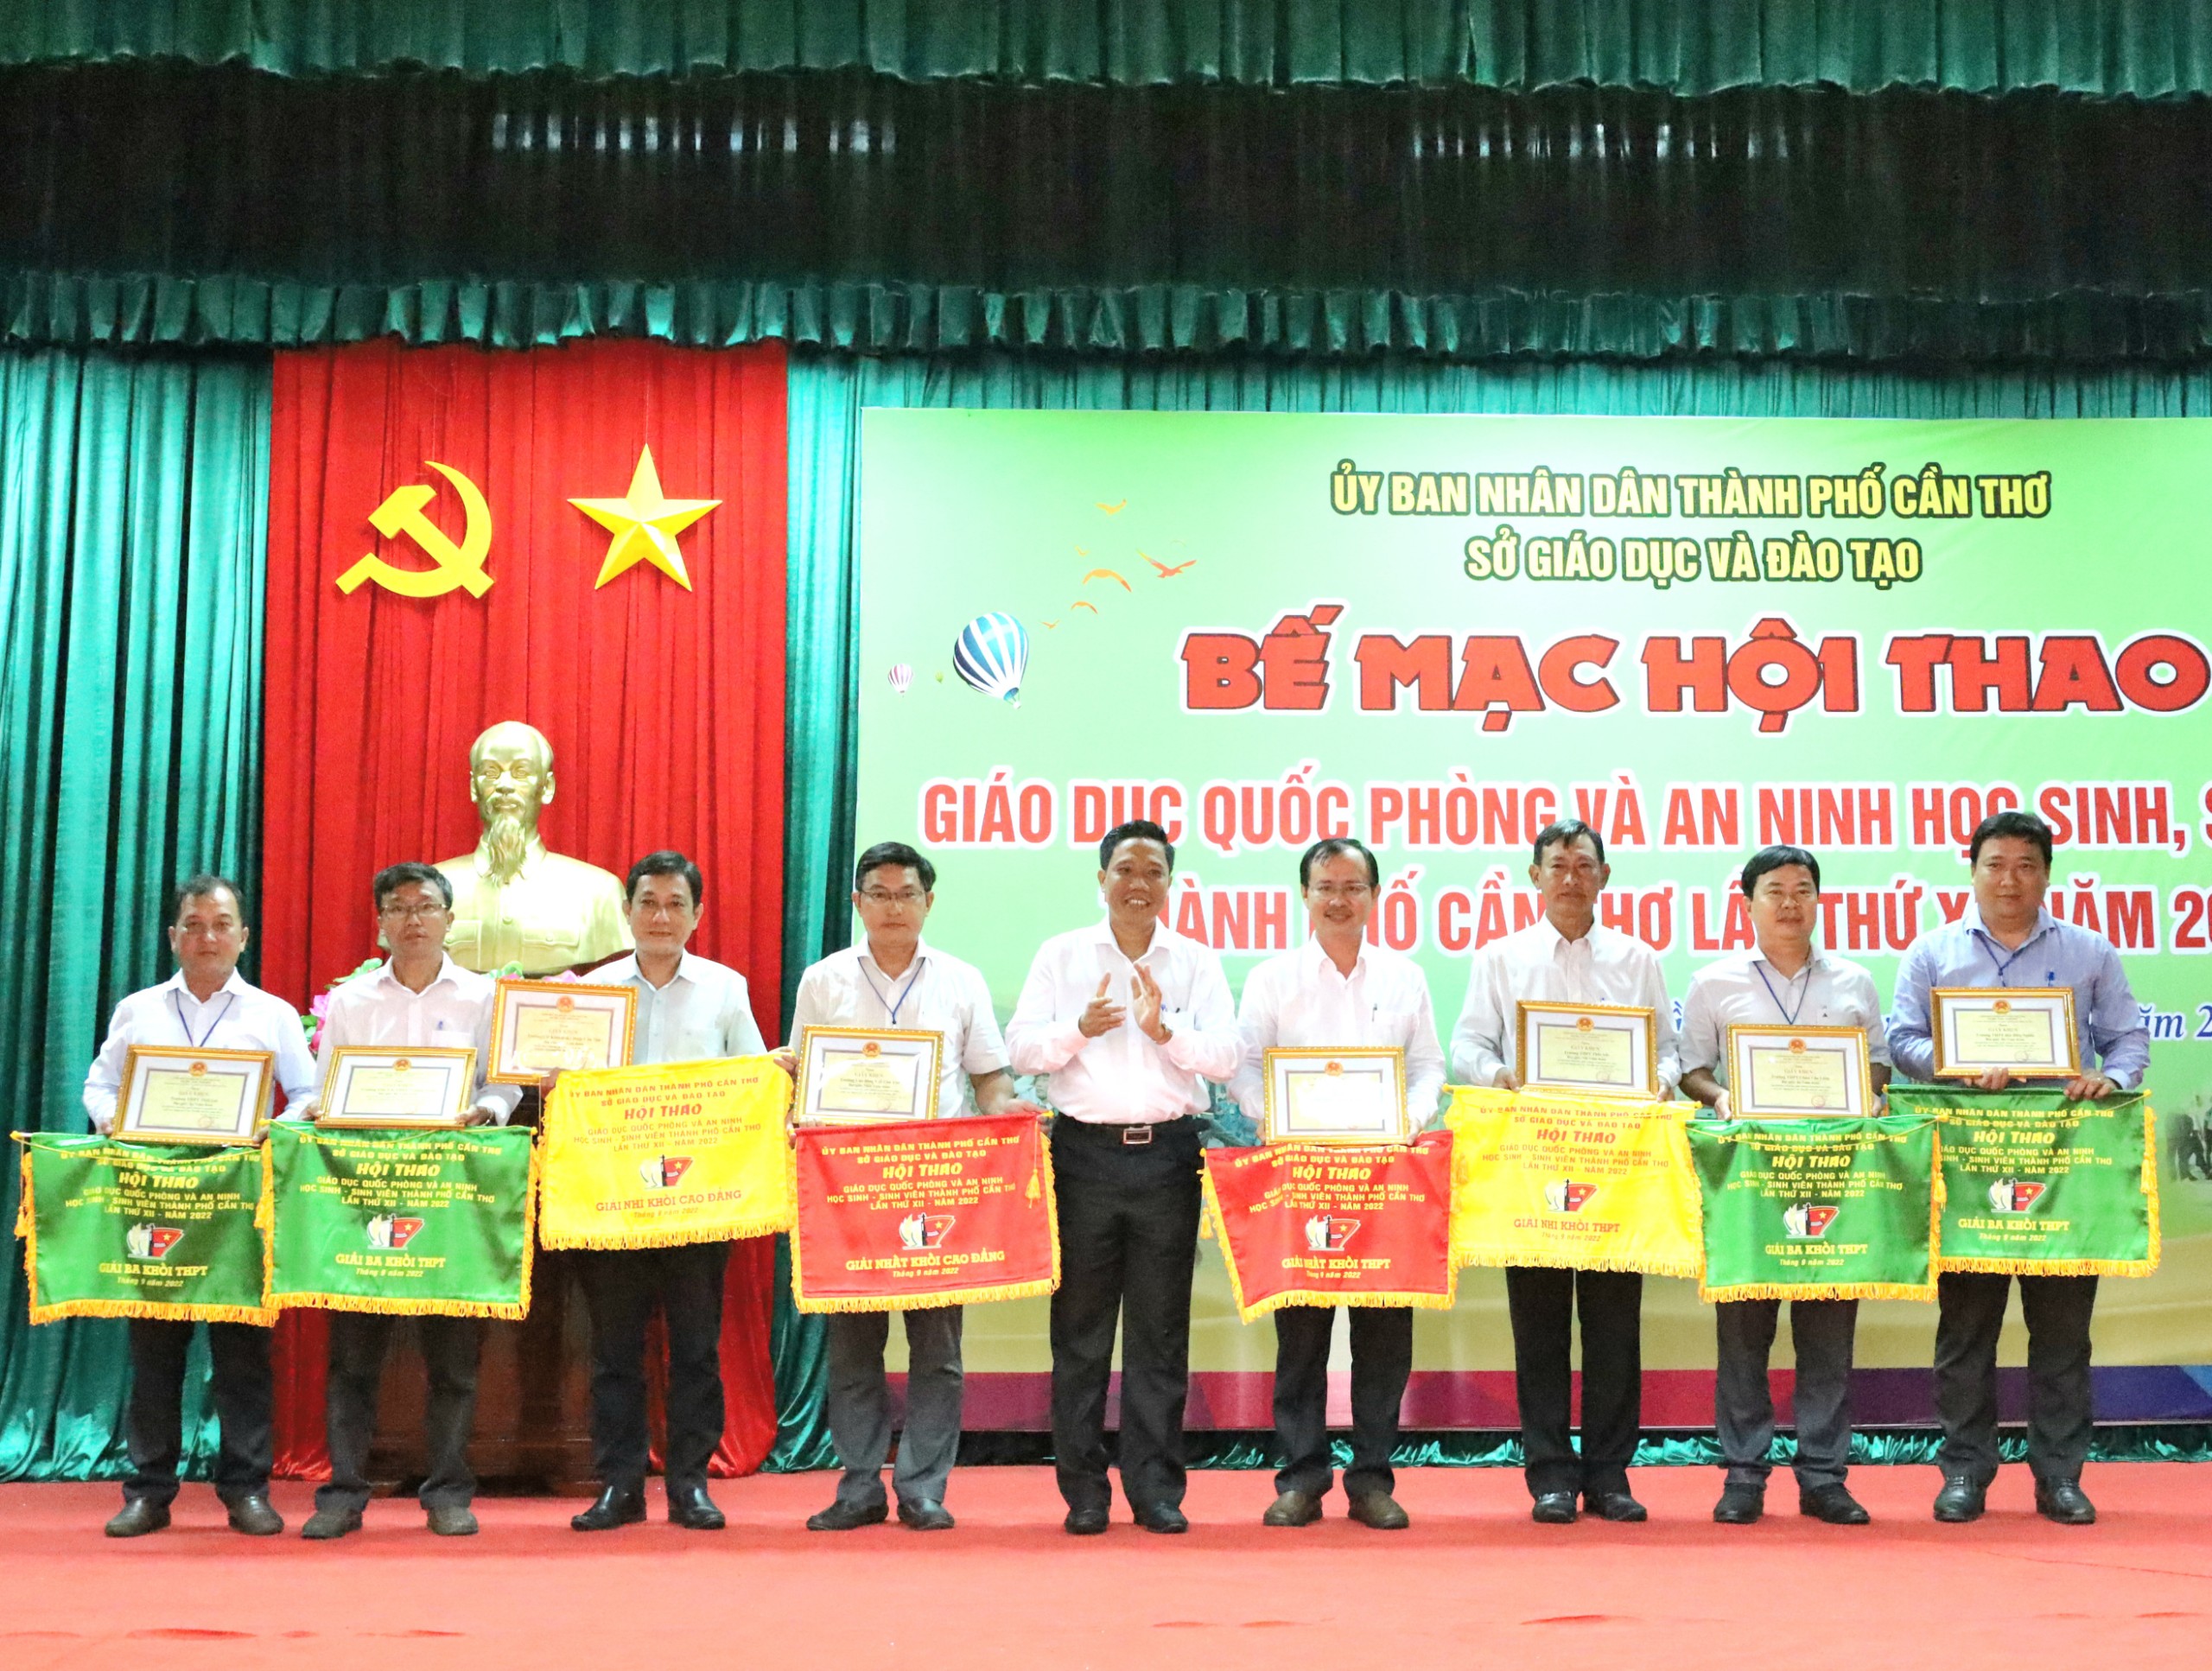 Ông Nguyễn Thực Hiện - Phó Chủ tịch UBND TP. Cần Thơ trao tặng cờ và giấy khen cho các đơn vị đạt giải toàn đoàn.